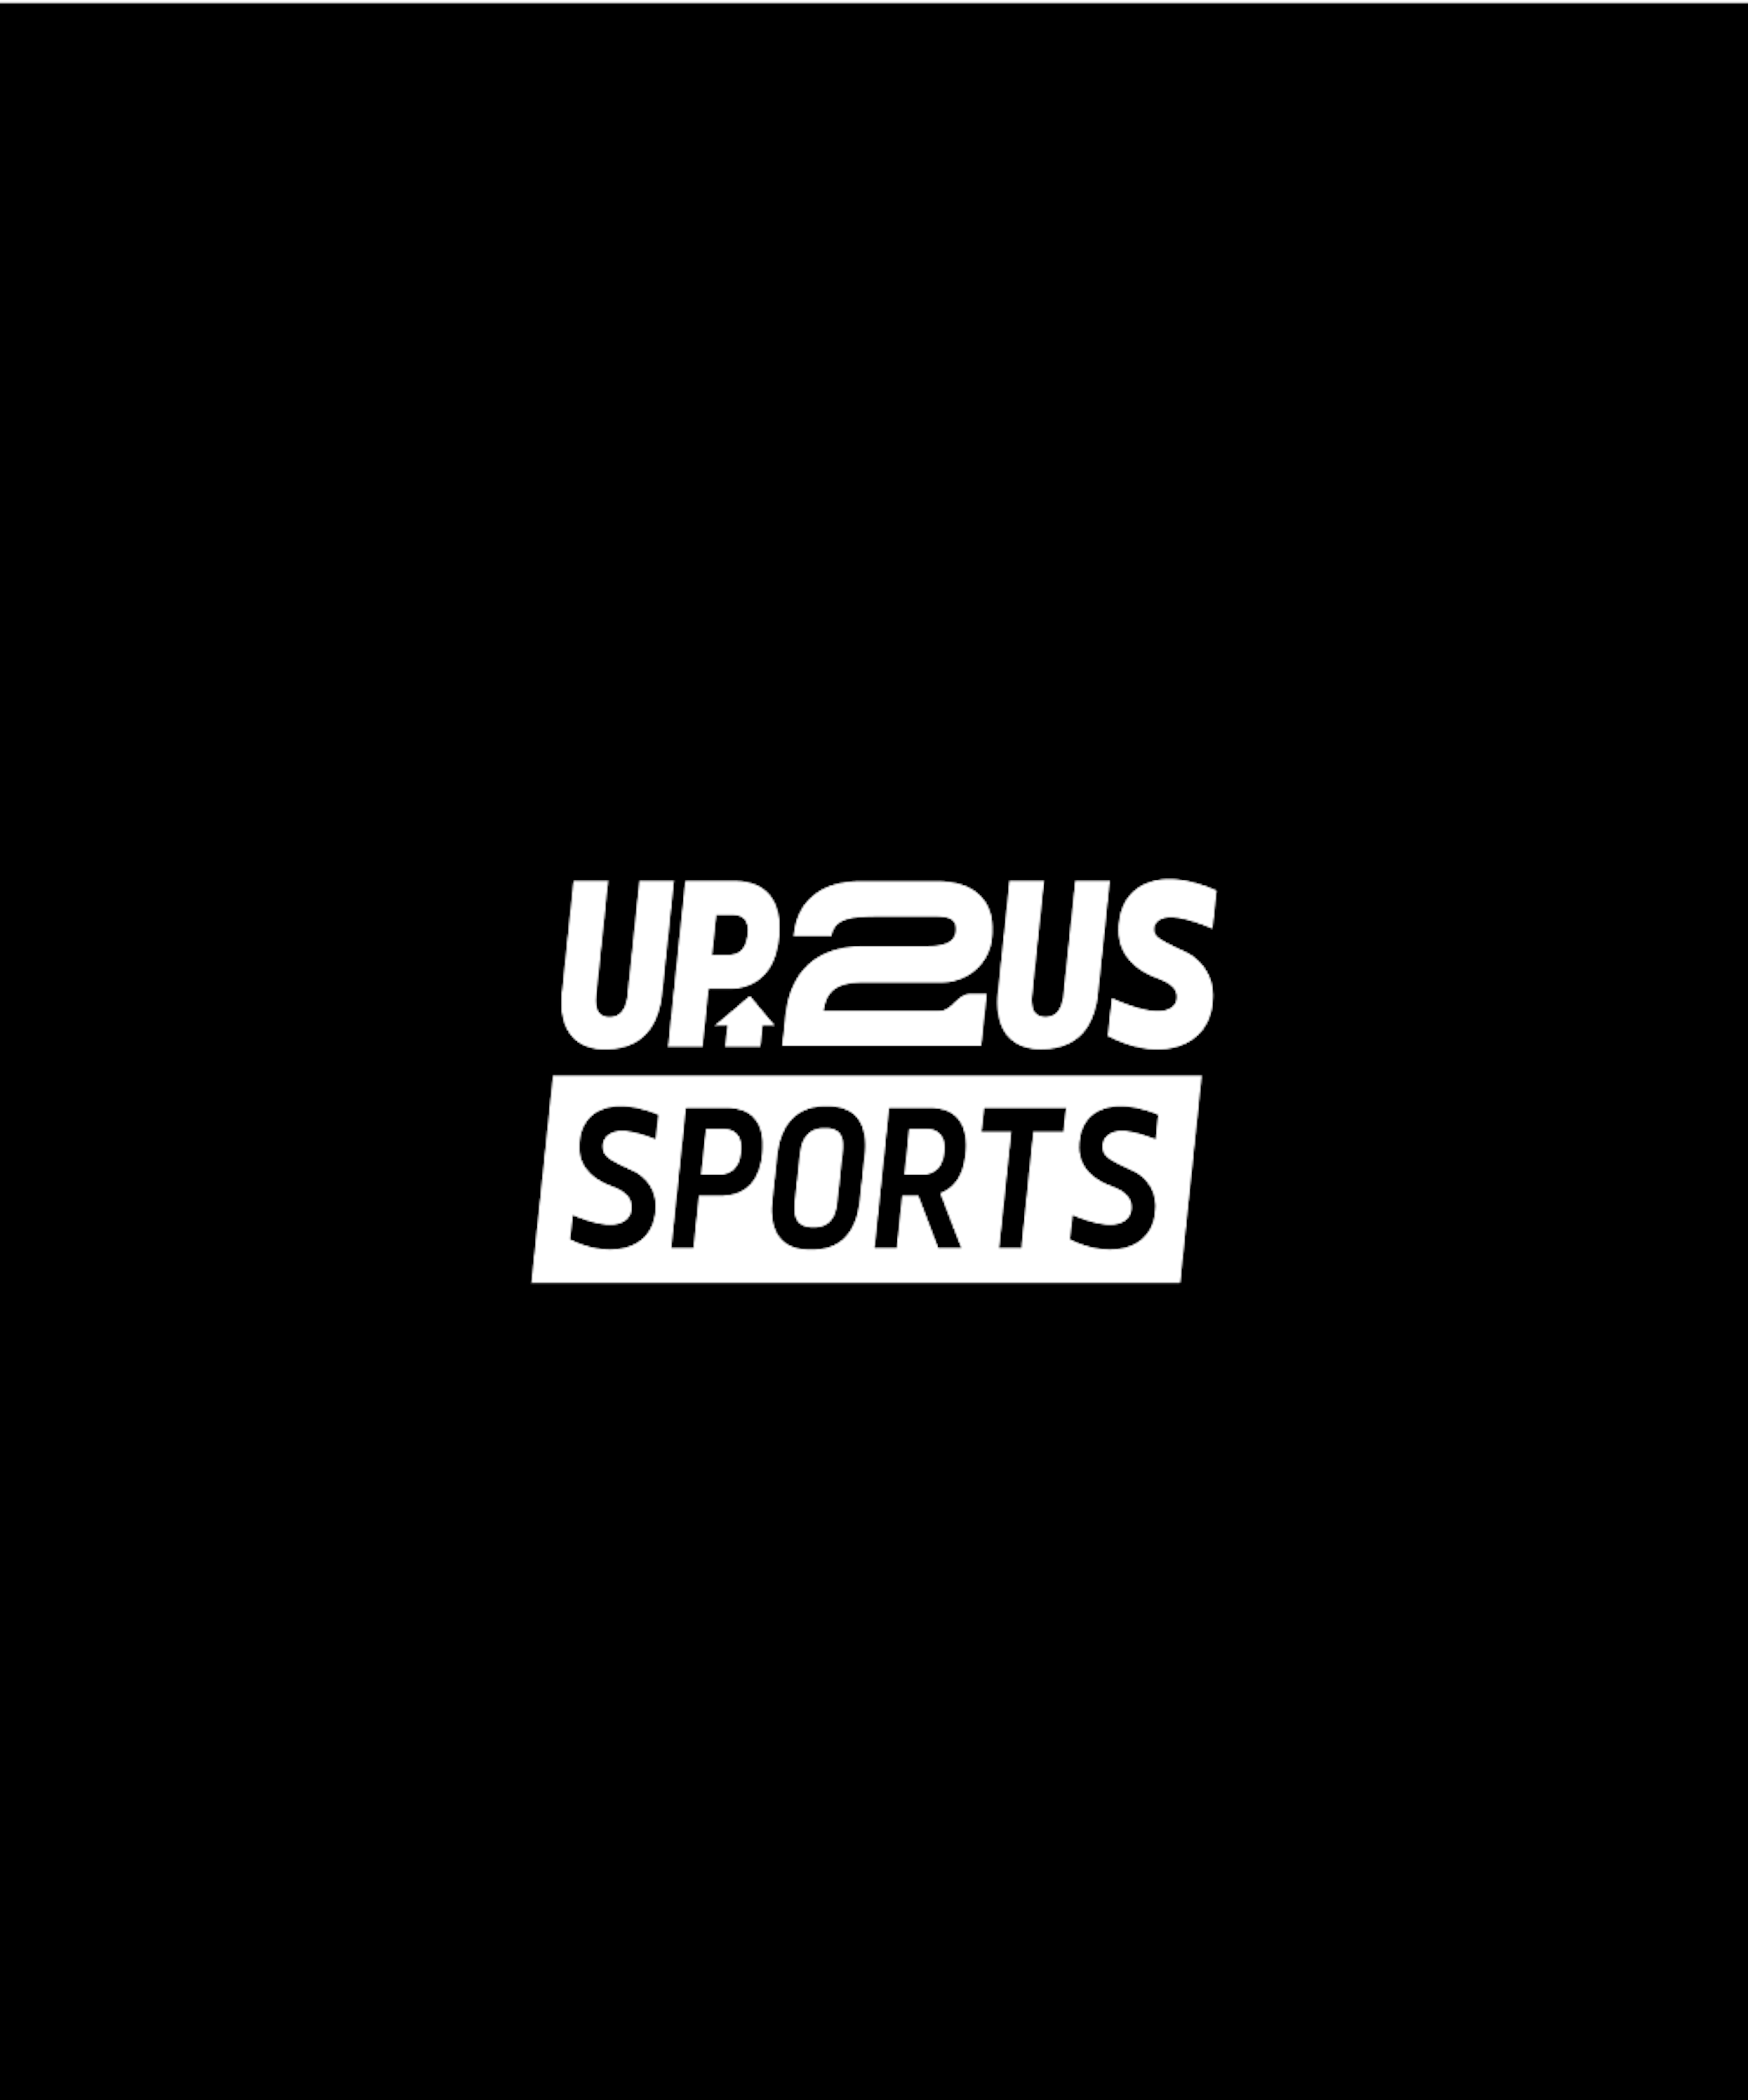 Up 2 us sports logo